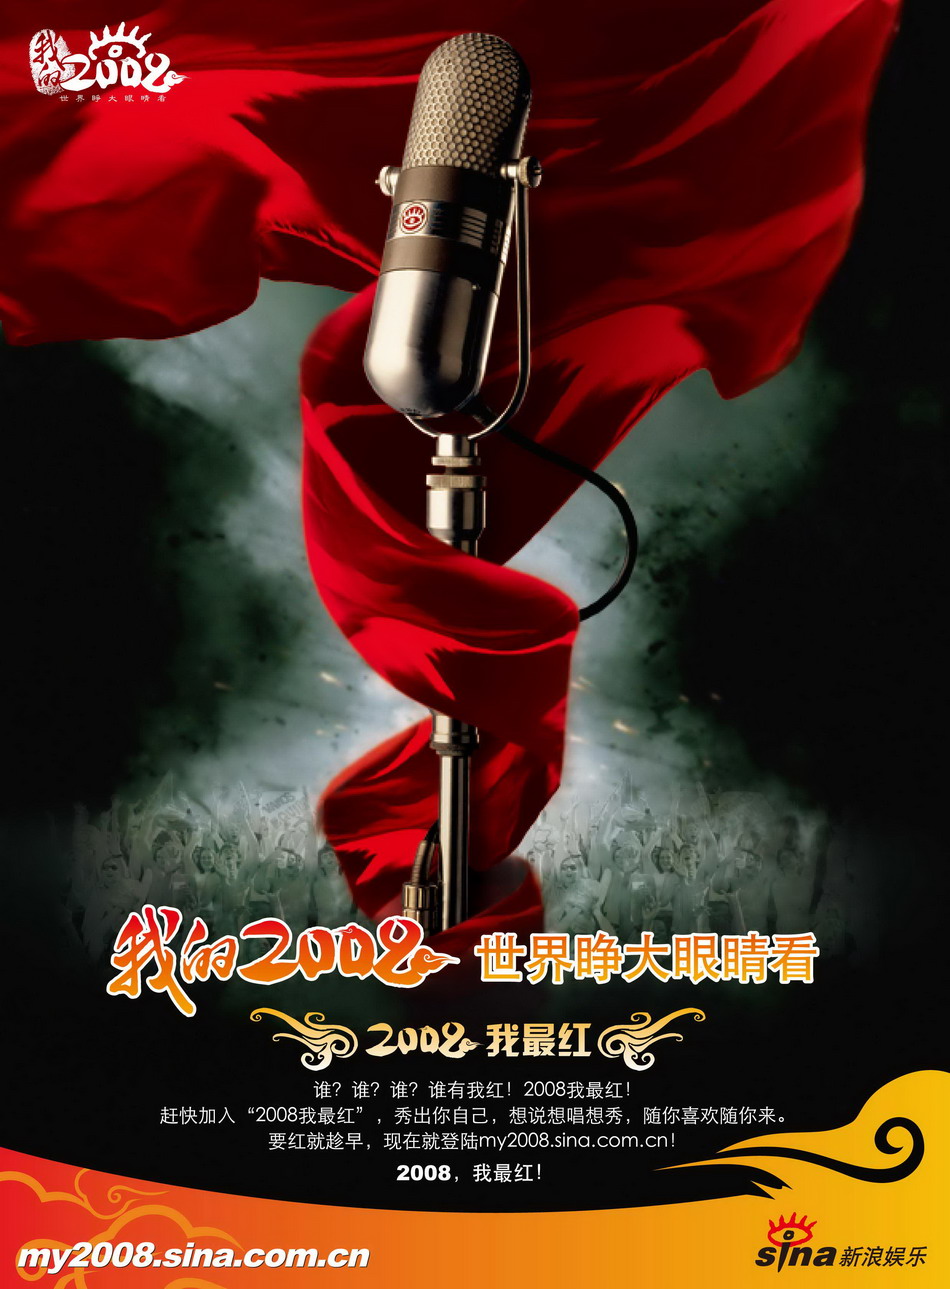 2008我最红网络选秀活动首款海报曝光(图)